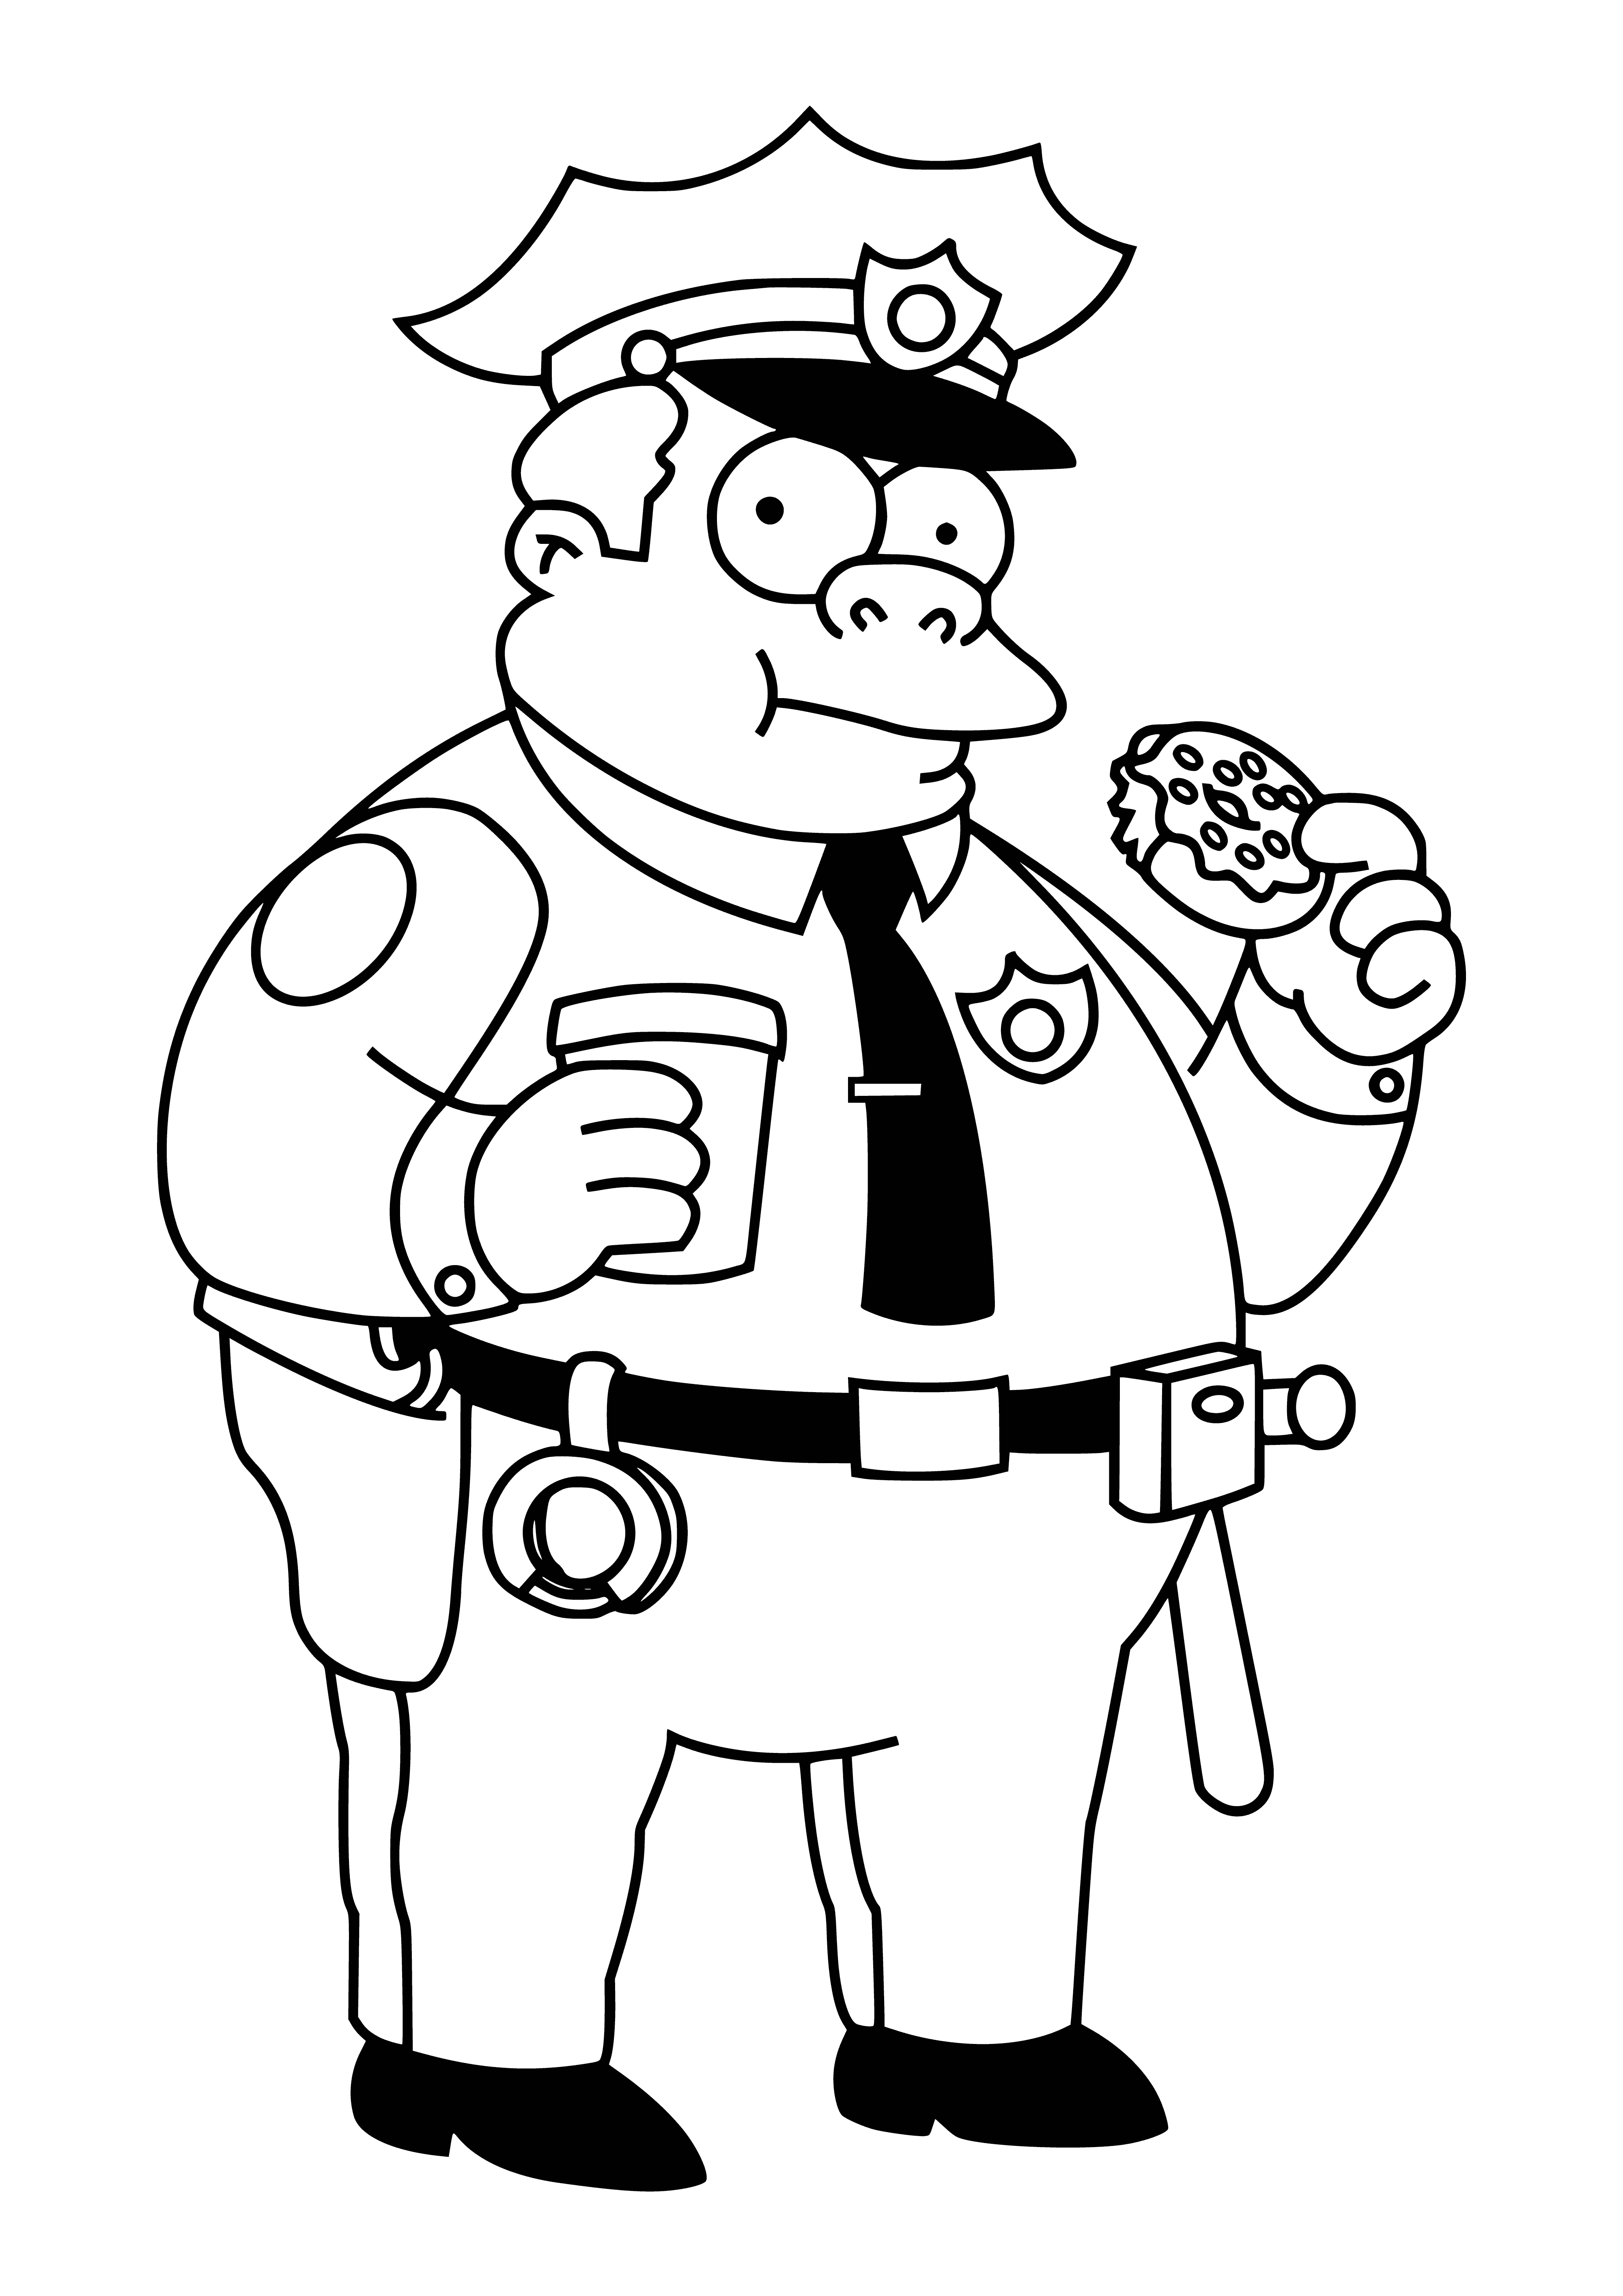 Chef de la police Clancy Wiggum coloriage